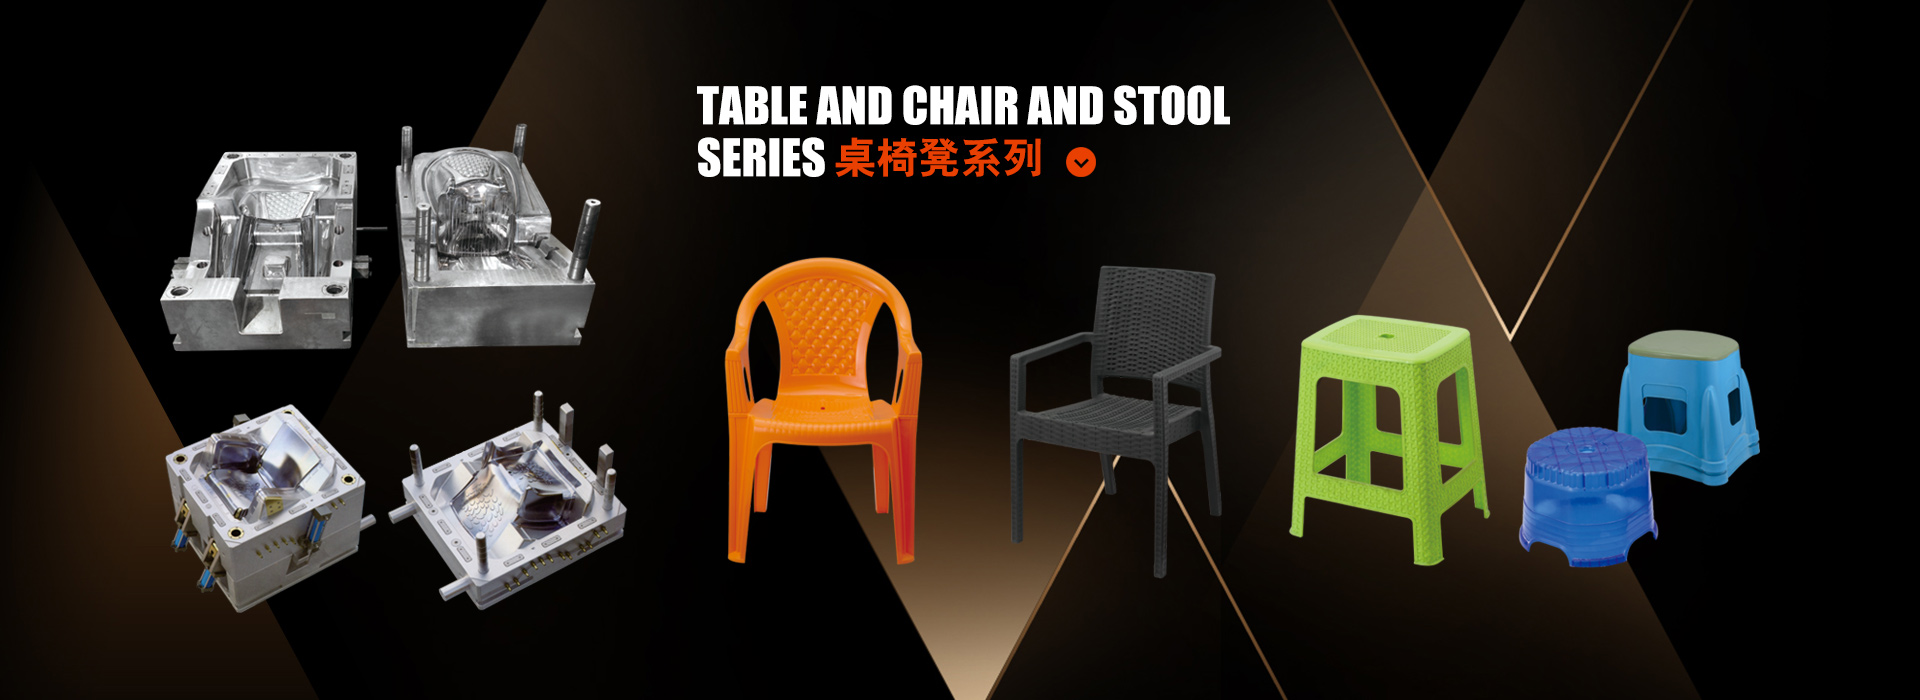 桌椅凳模具系列